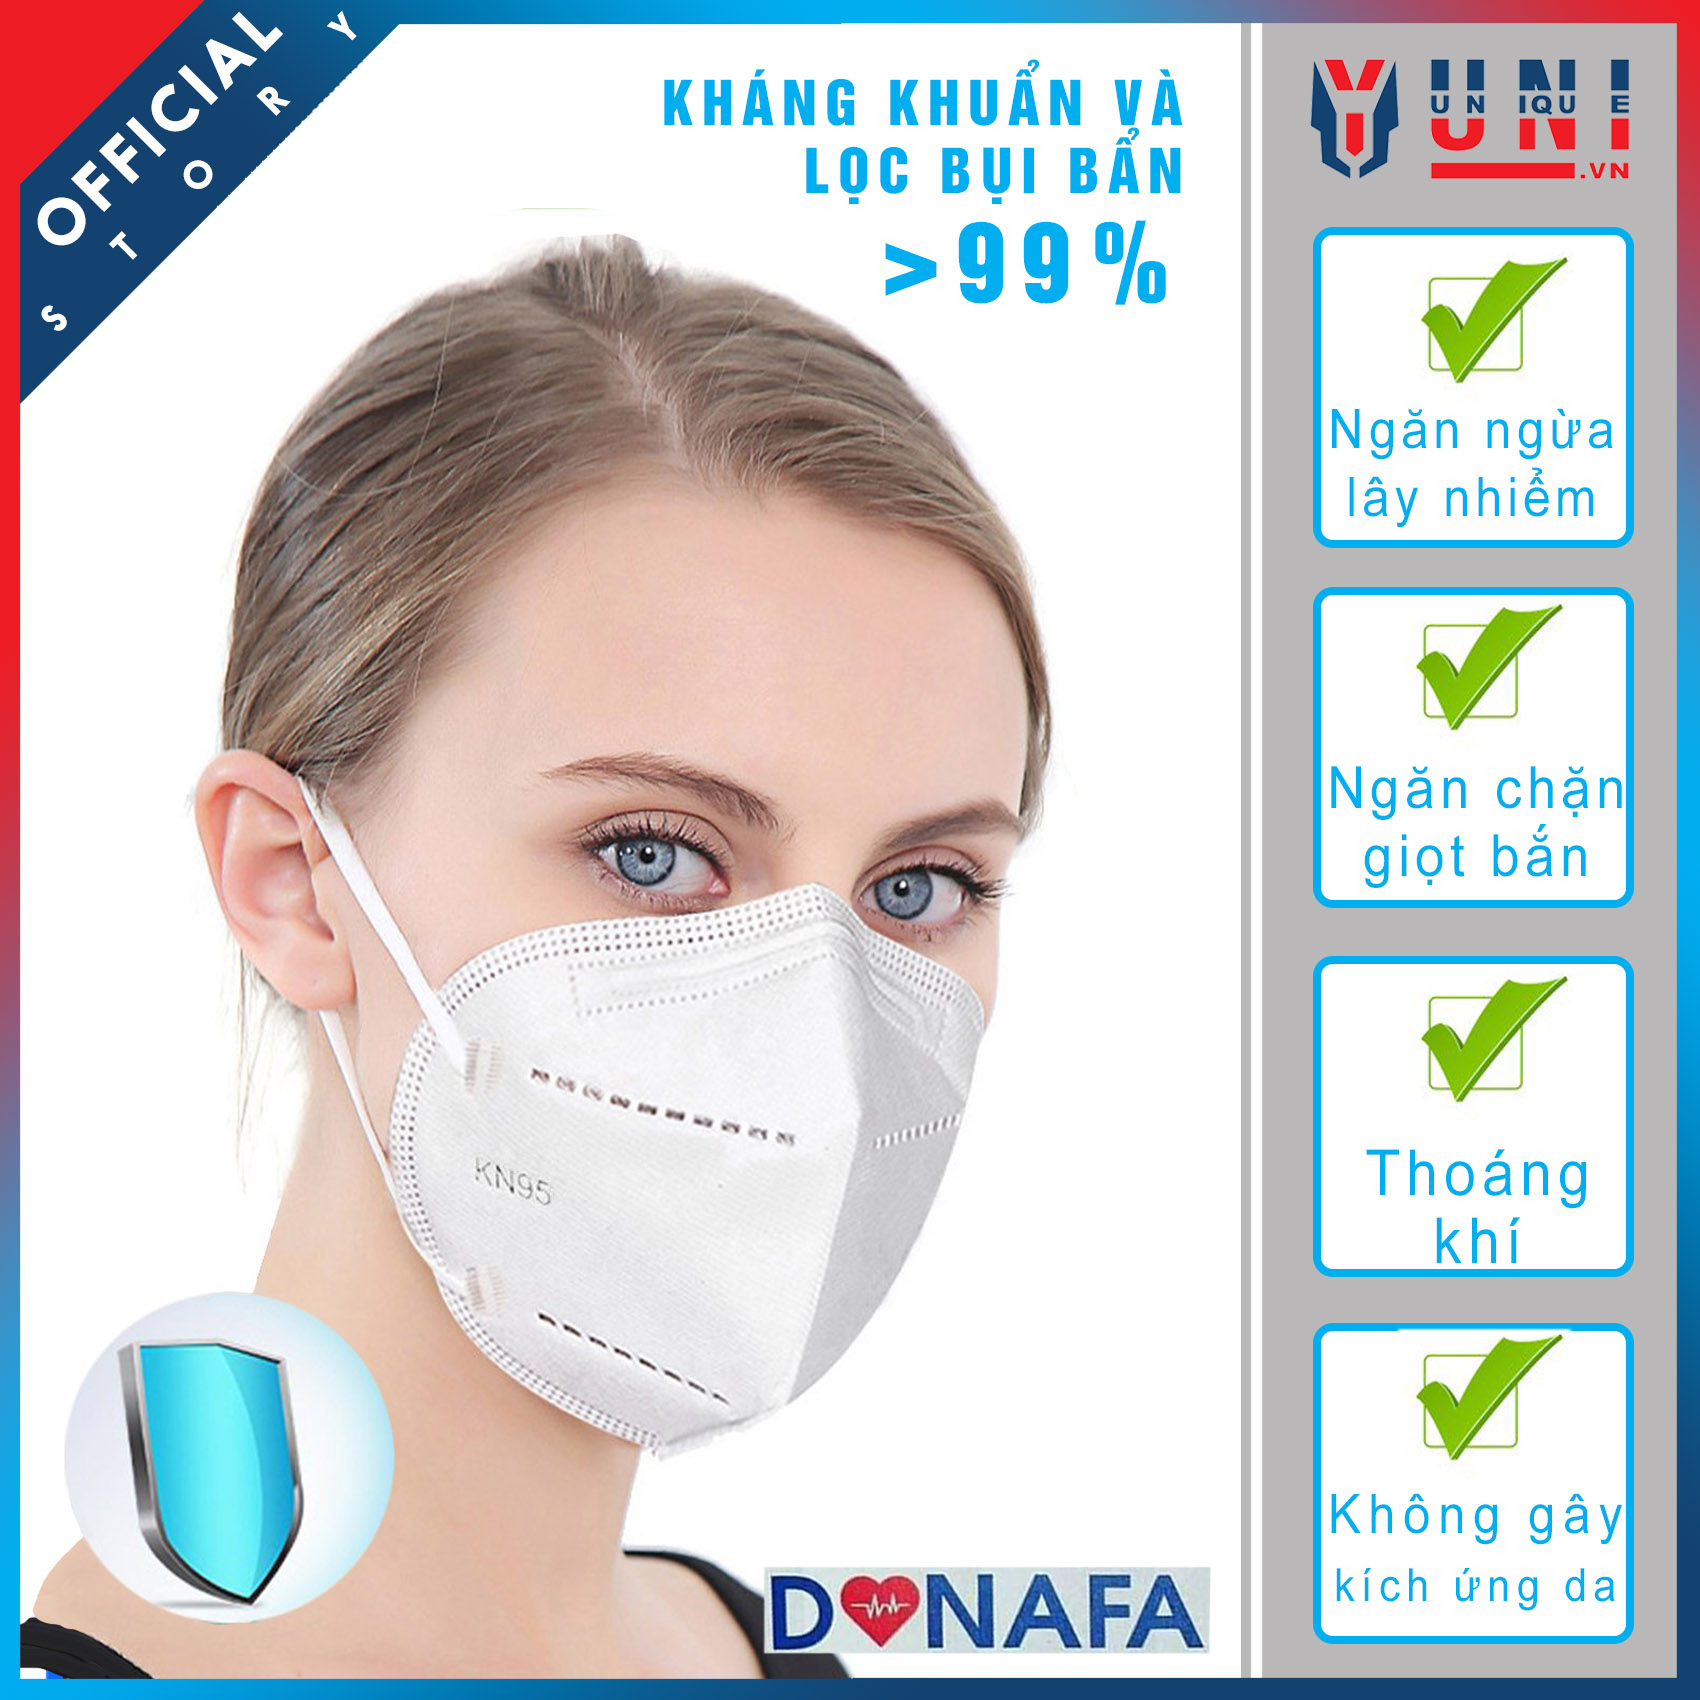 Khẩu trang y tế KN95 DONAFA kháng khuẩn và lọc bụi bẩn 99%, khẩu trang 5 lớp lọc ngăn chặn giọt bắn lây lan (10cái/hộp).